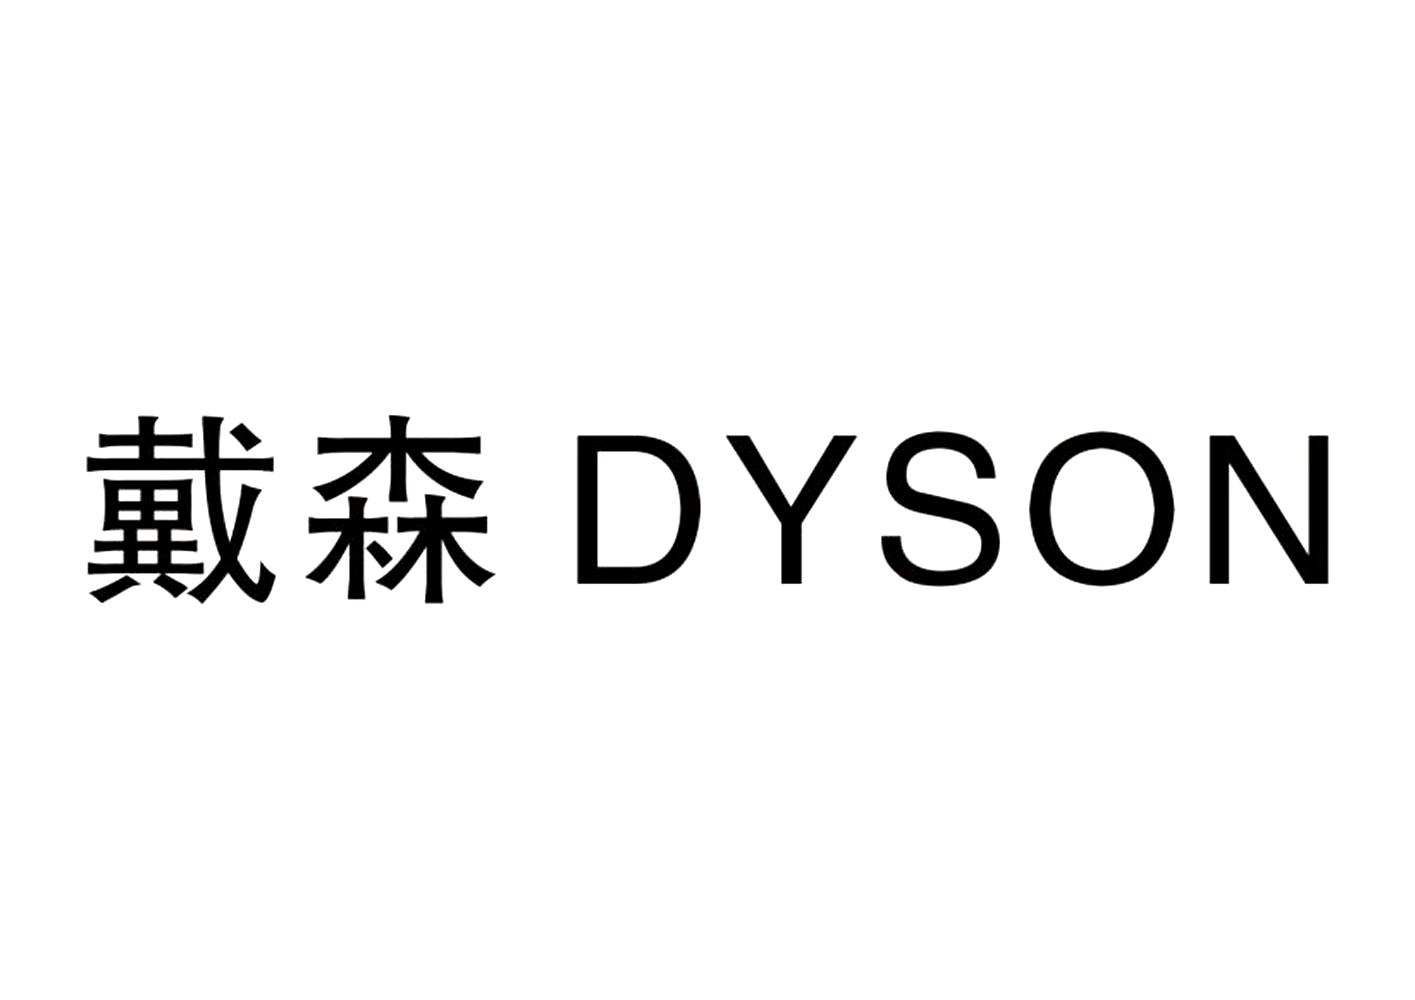 戴森 dyson 商标公告